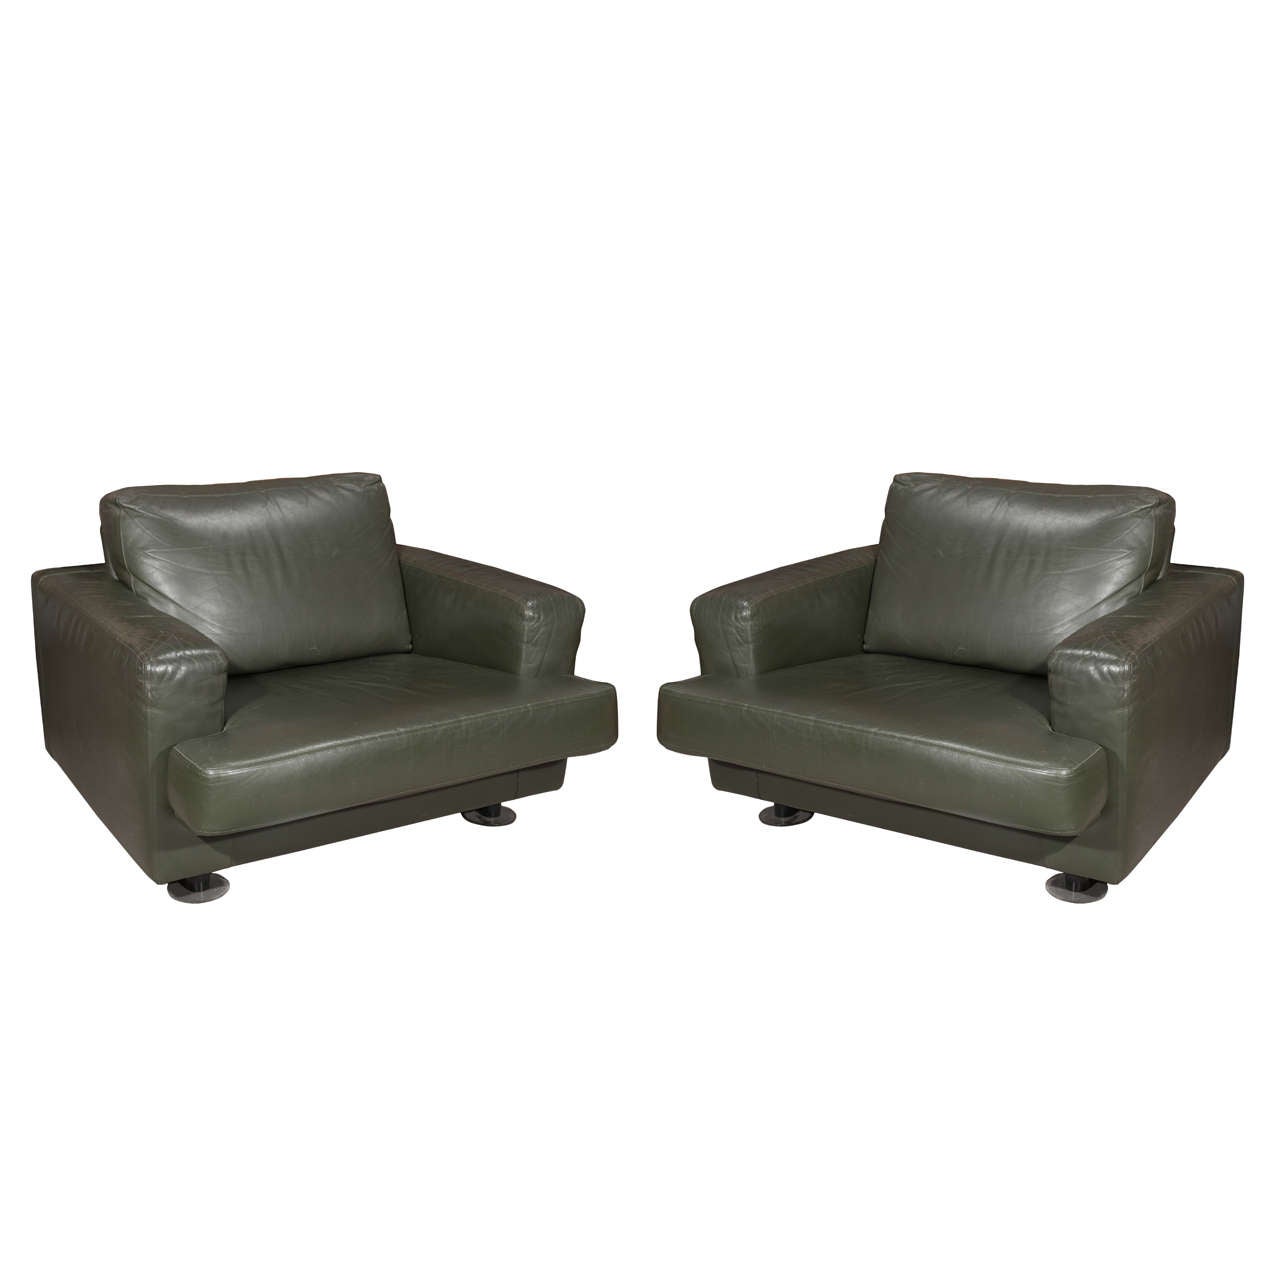 Pair of 20th Century Green Leather Italian Armchairs, Minotti